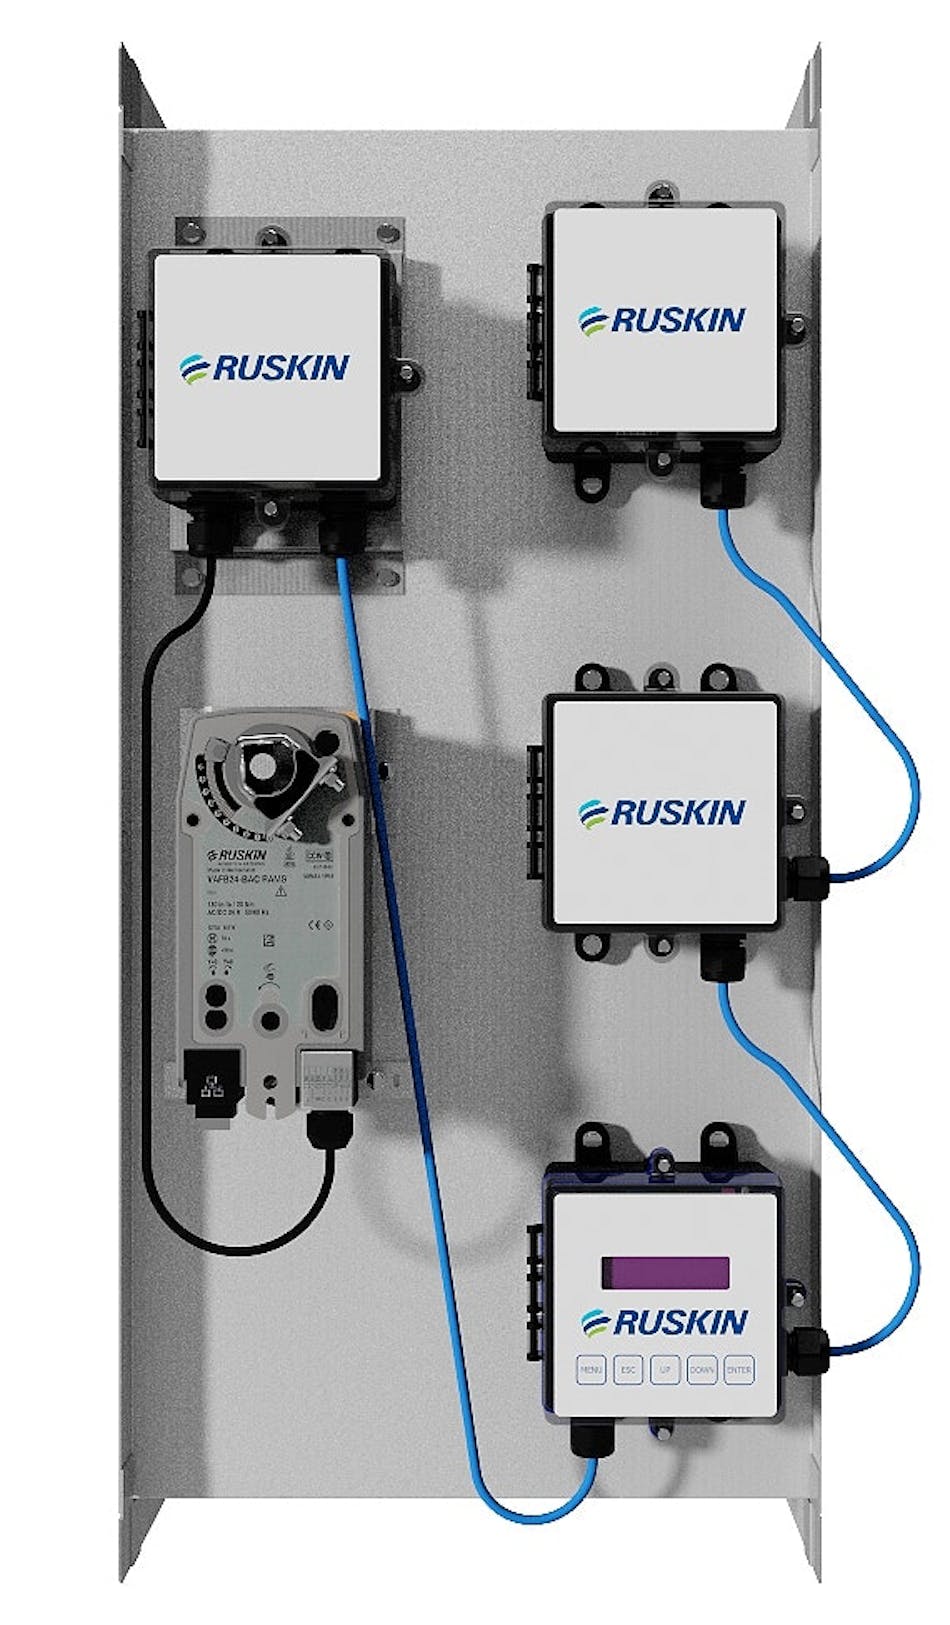 Ruskin-AIRFLOW-IQ-1